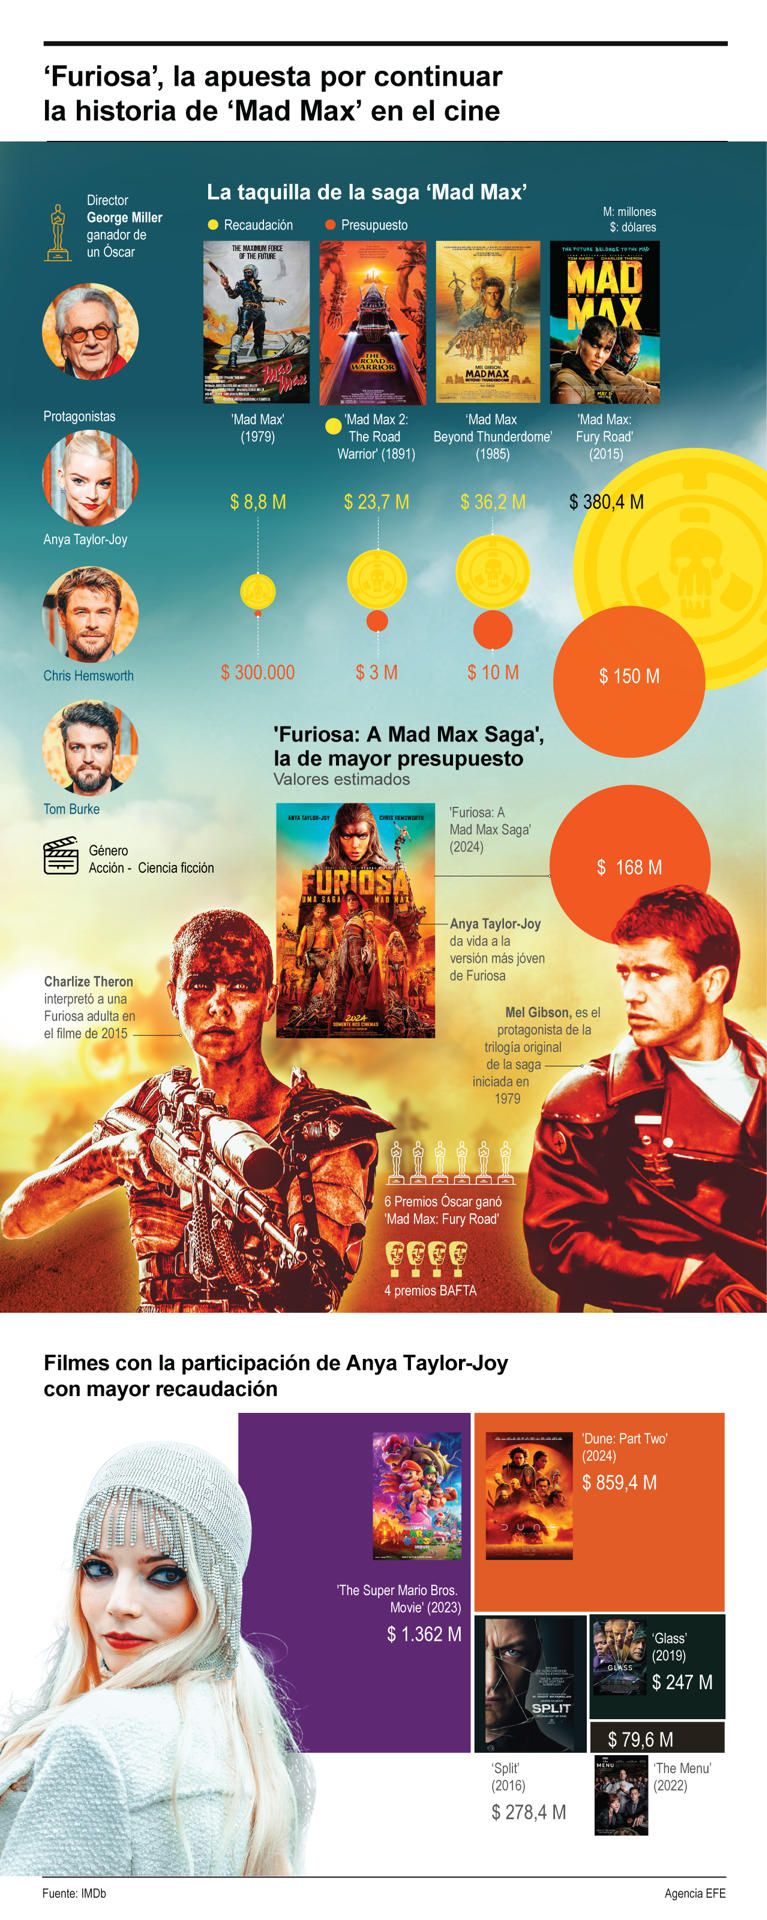 'Furiosa', la apuesta por continuar la historia de 'Mad Max' en el cine 01 250524